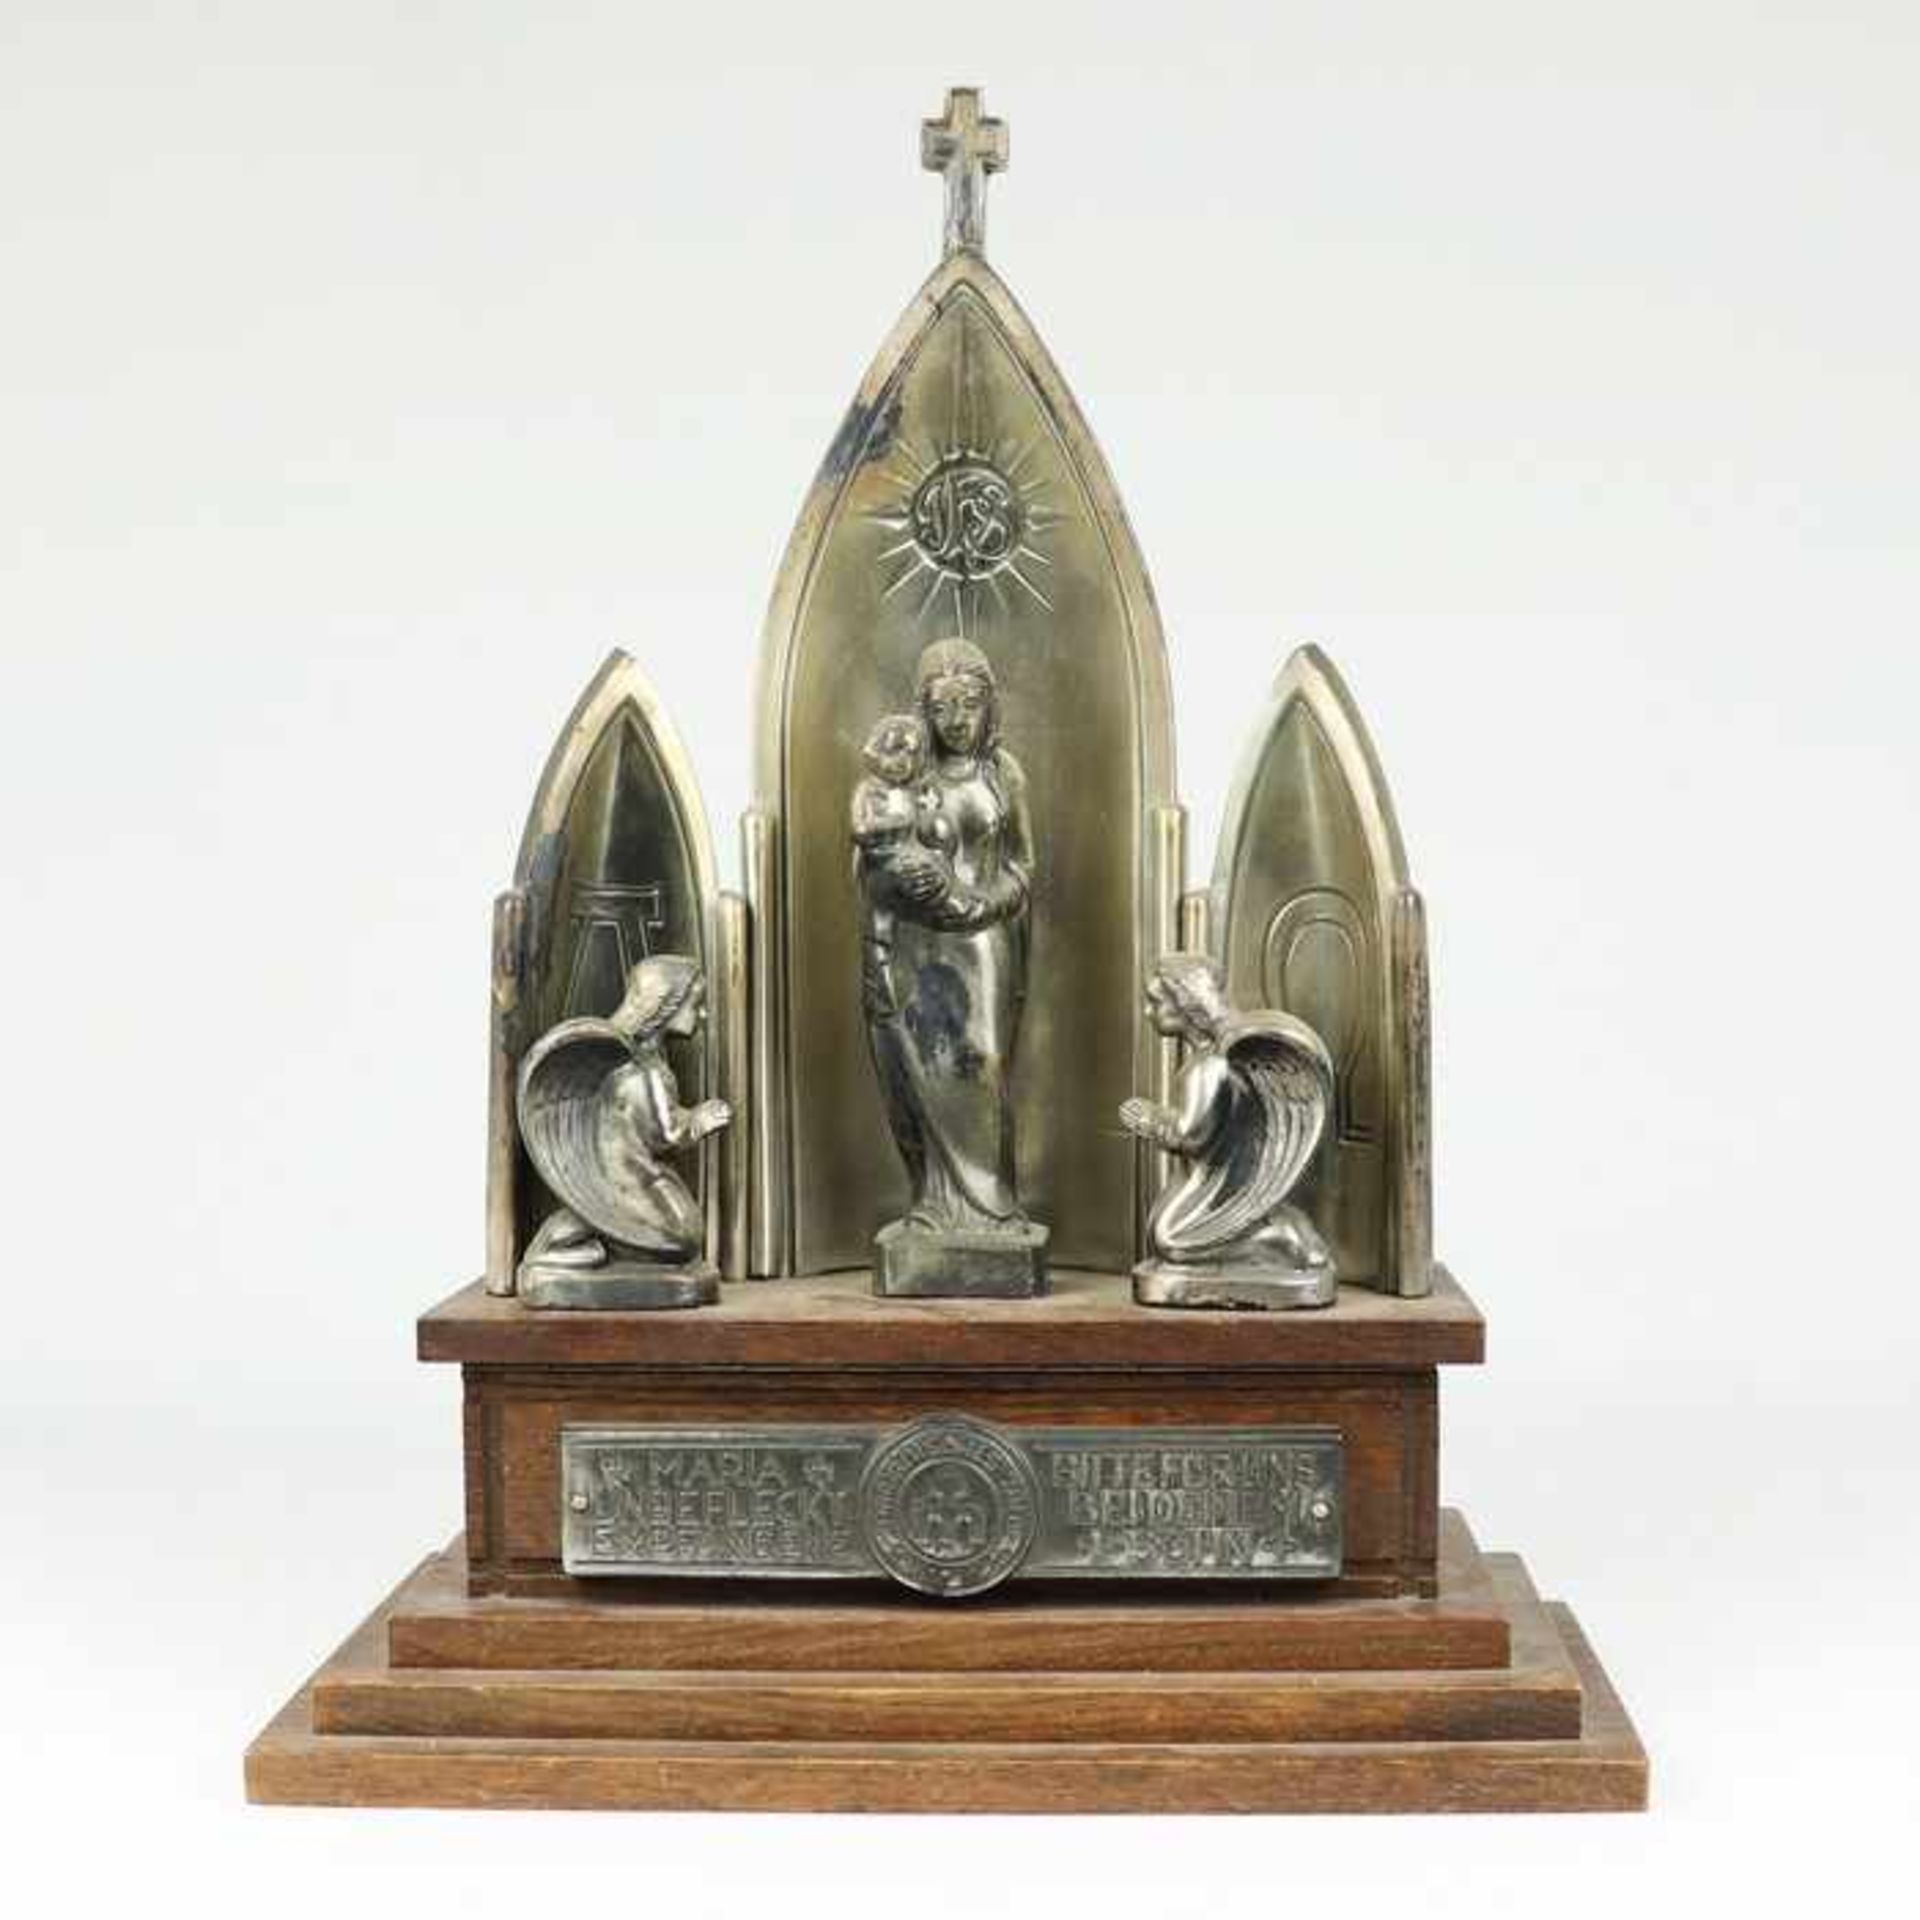 Hausaltar1953, Franz Welty, Augsburg, wurde anläßlich des marianischen Jahres gefertigt, mit